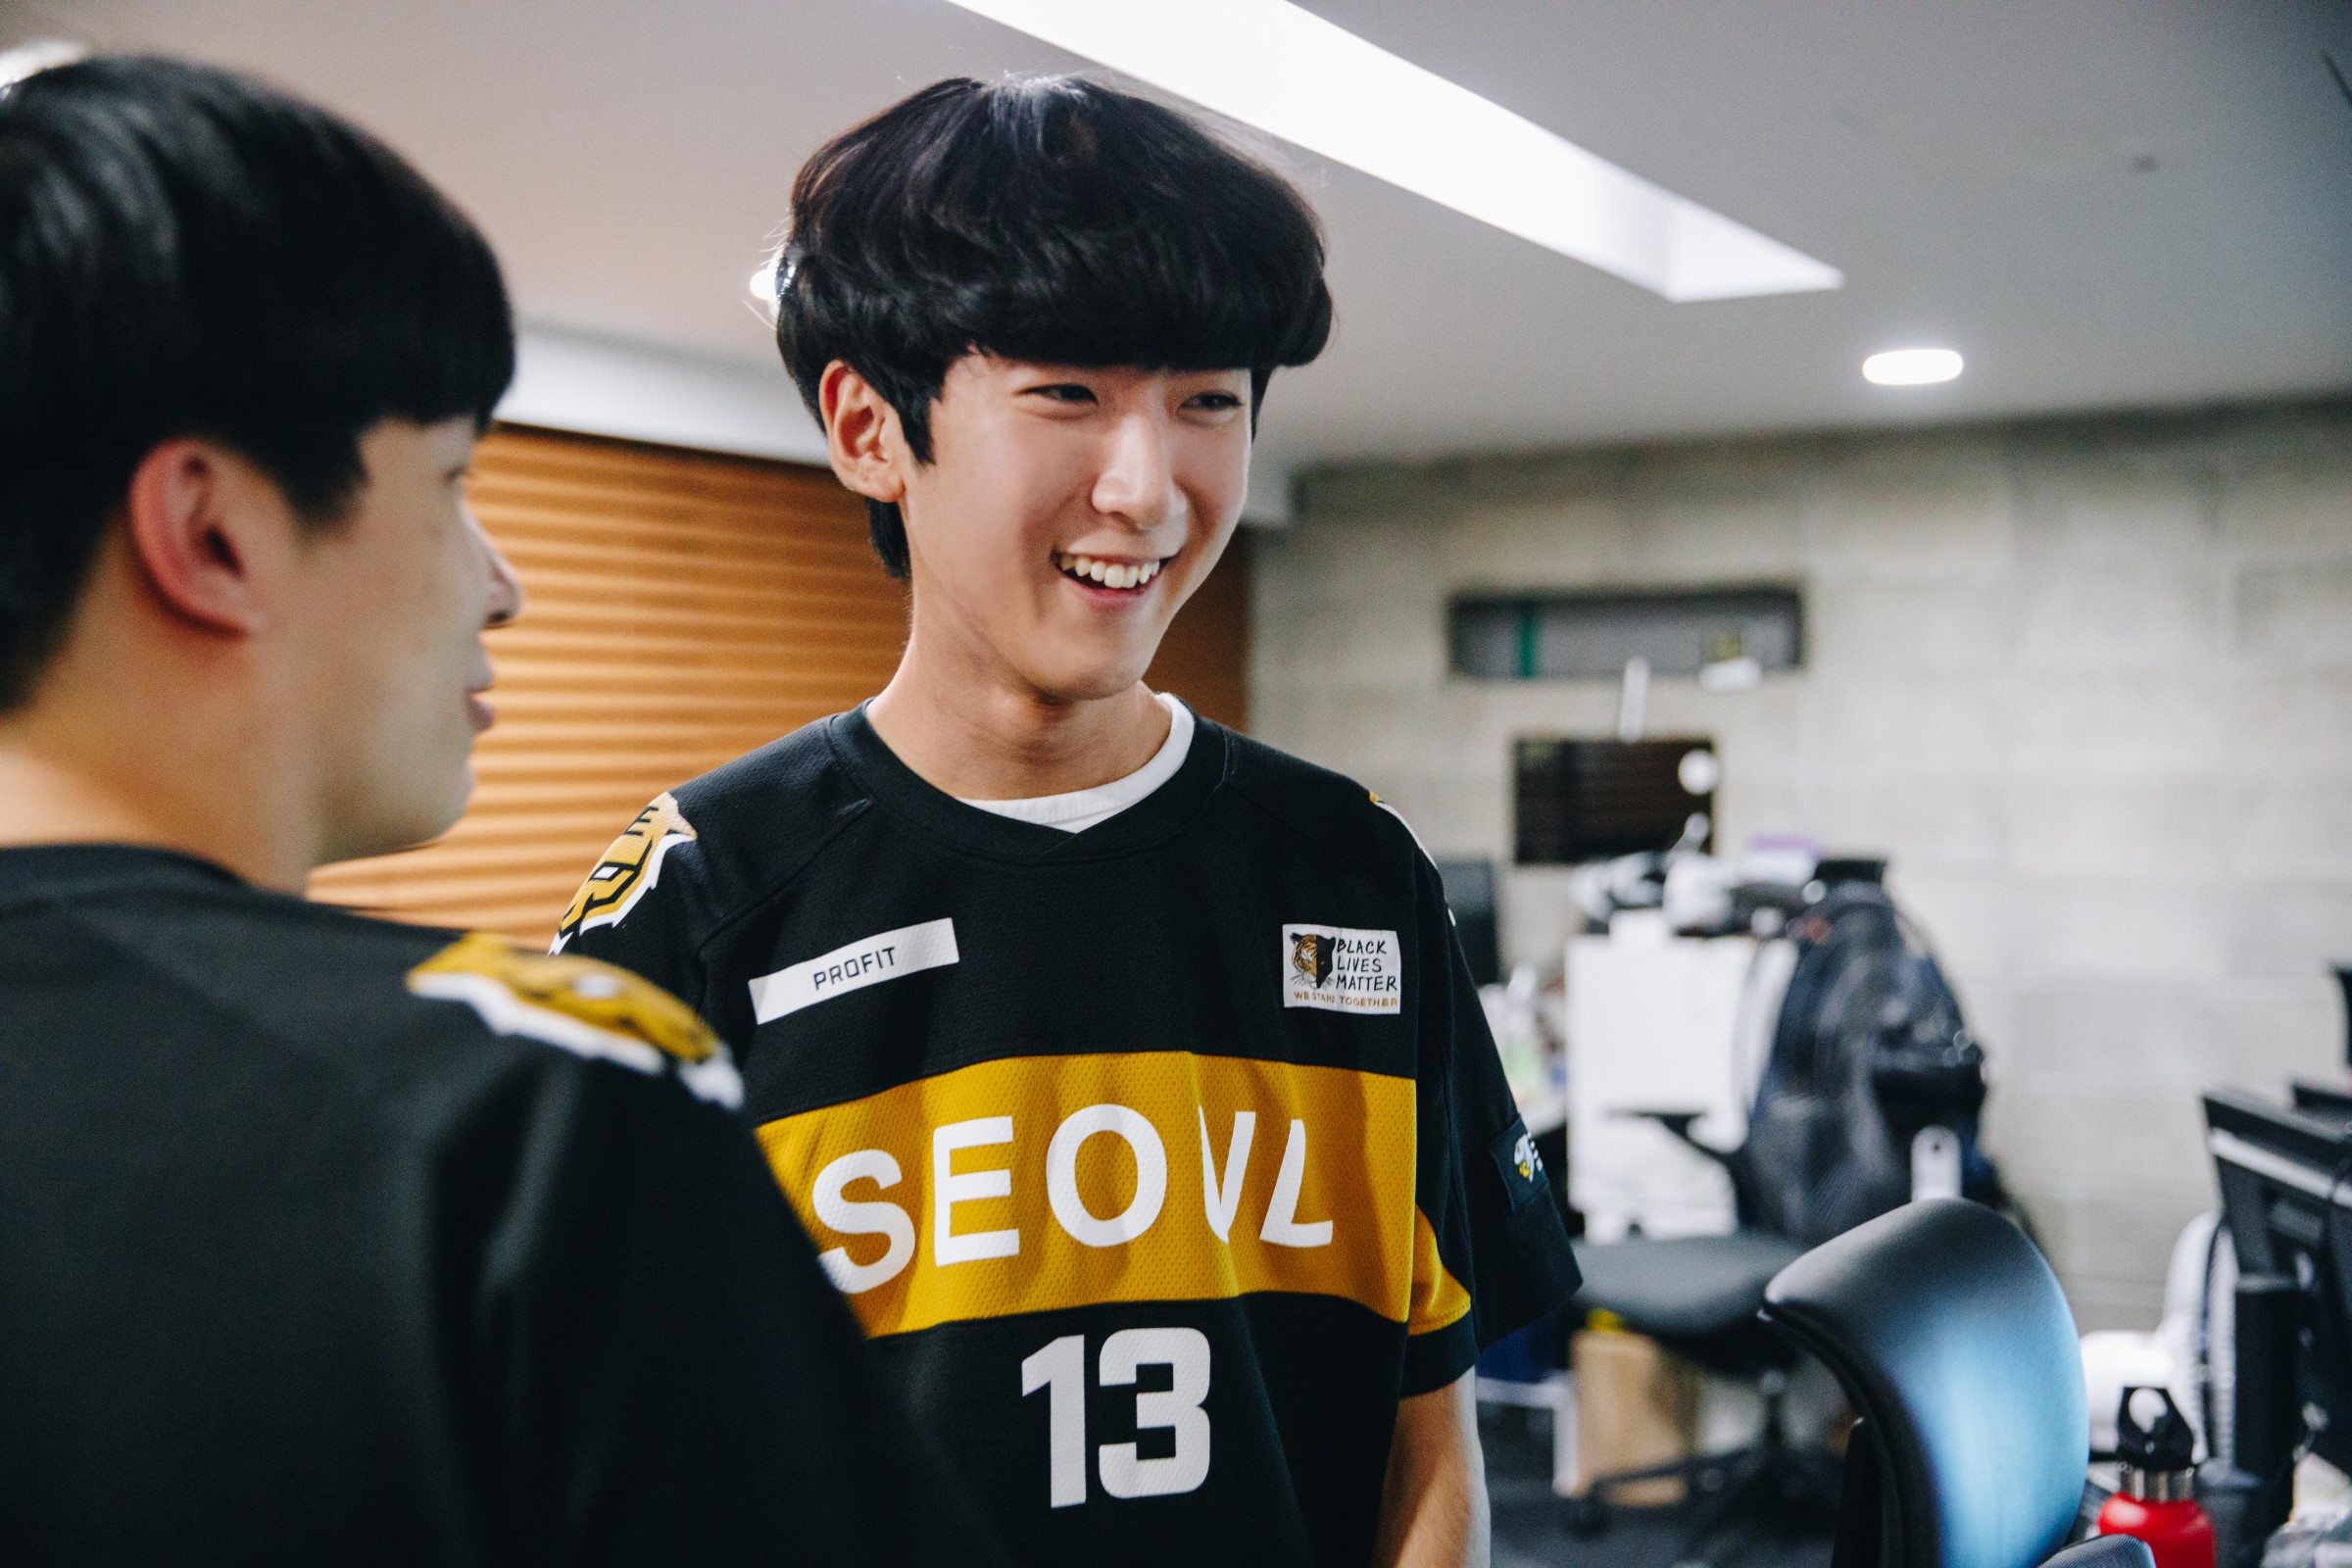 OWL E-sports Player Uniform Jersey Seoul Dynasty Team Tshirt